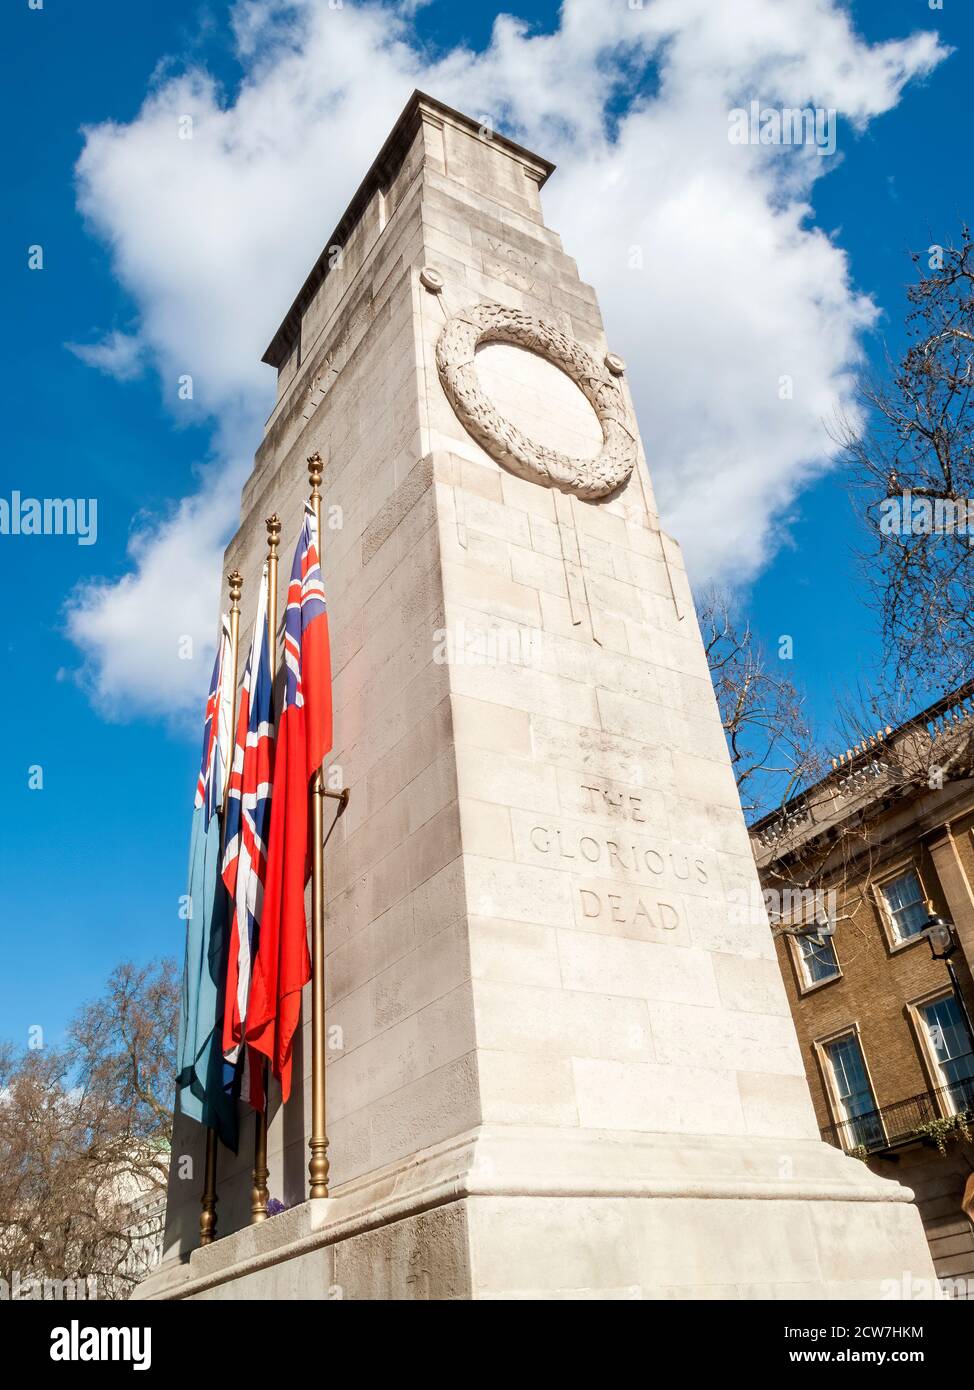 Londra, Inghilterra, Regno Unito, 1 marzo 2010 : il memoriale di guerra britannico Cenotafh a Whitehall per ricordare i morti in entrambe le guerre mondiali sulla remembrance Domenica whic Foto Stock